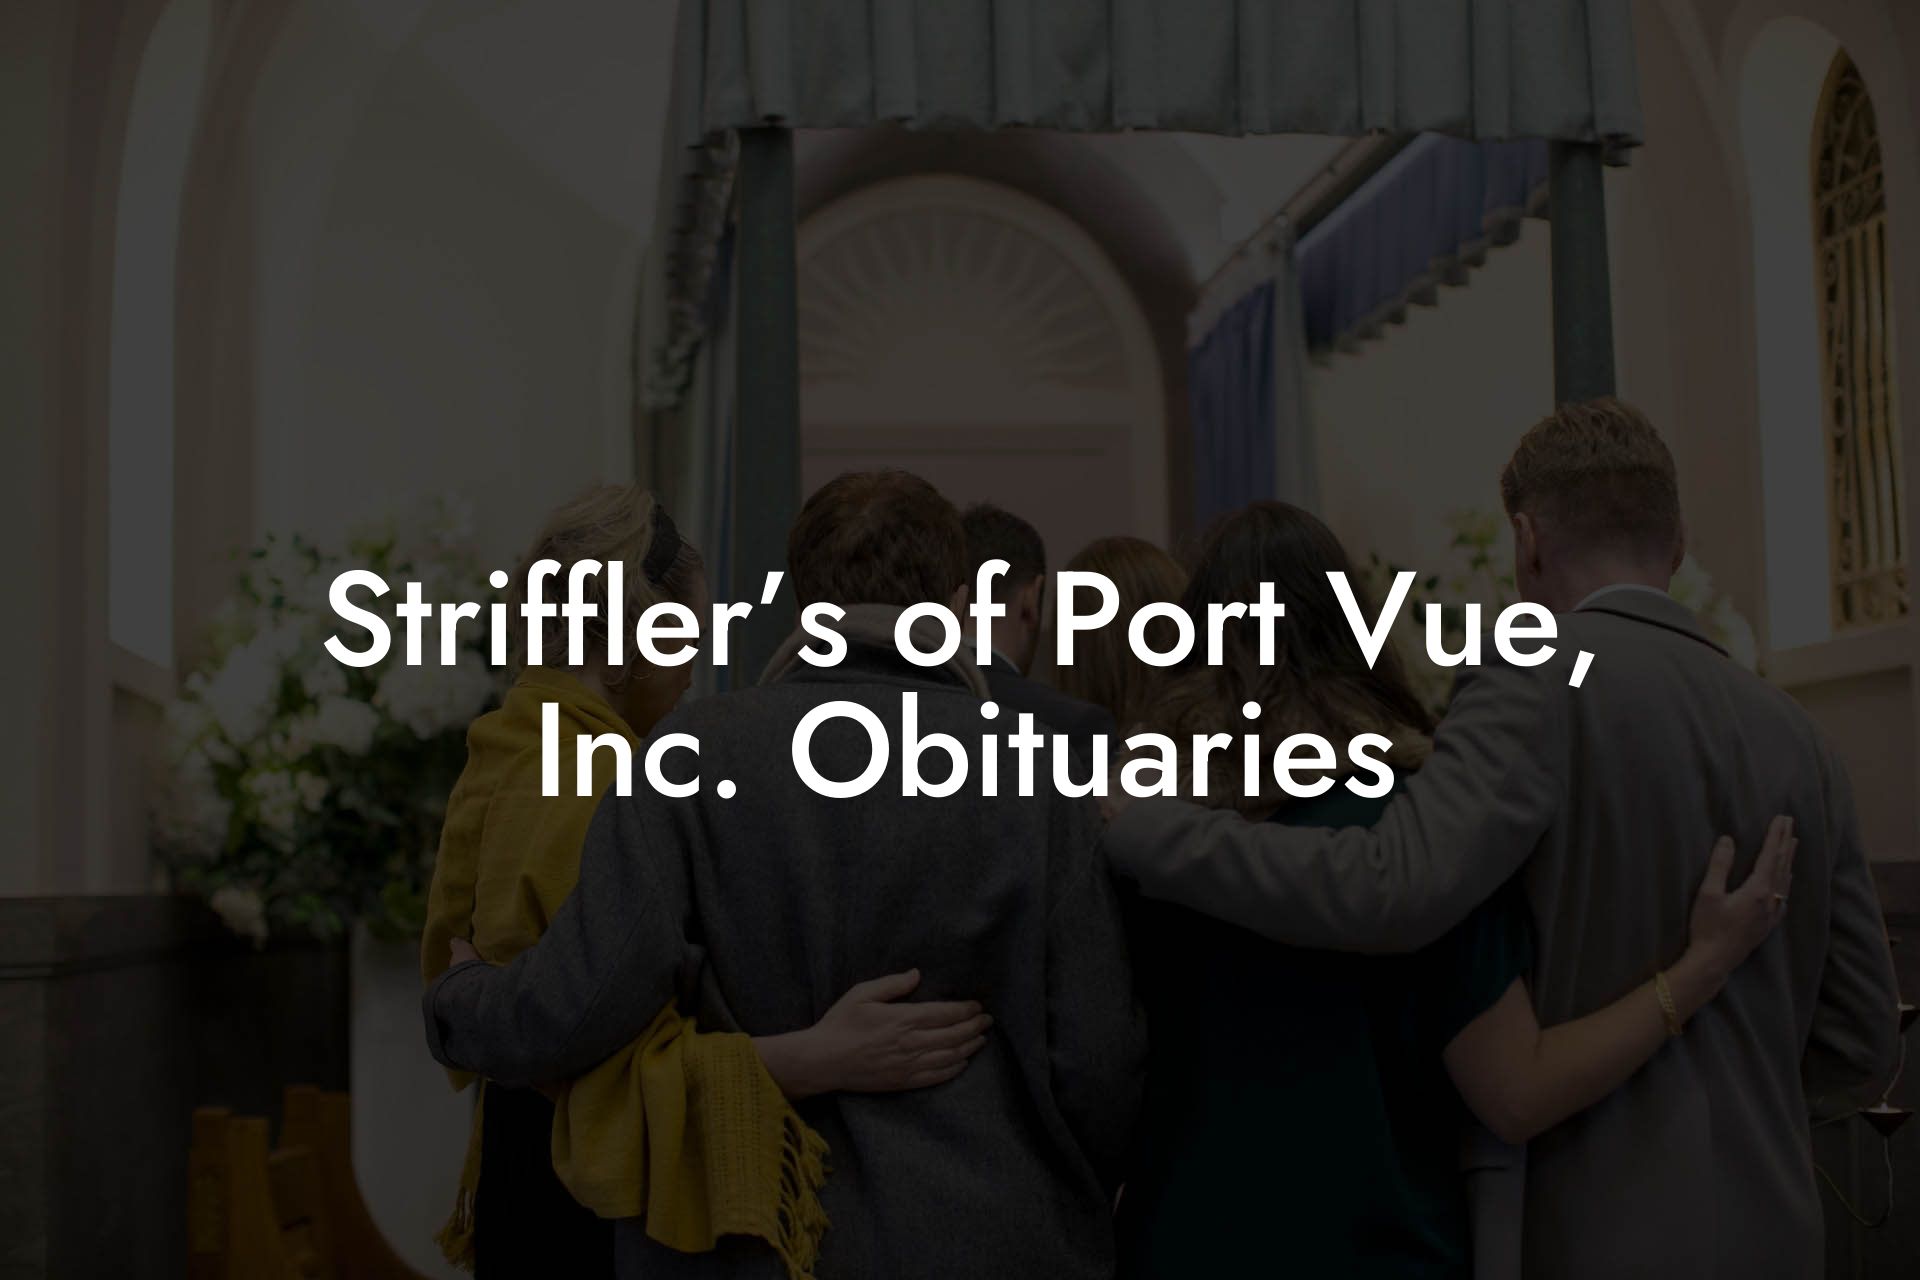 Striffler’s of Port Vue, Inc. Obituaries